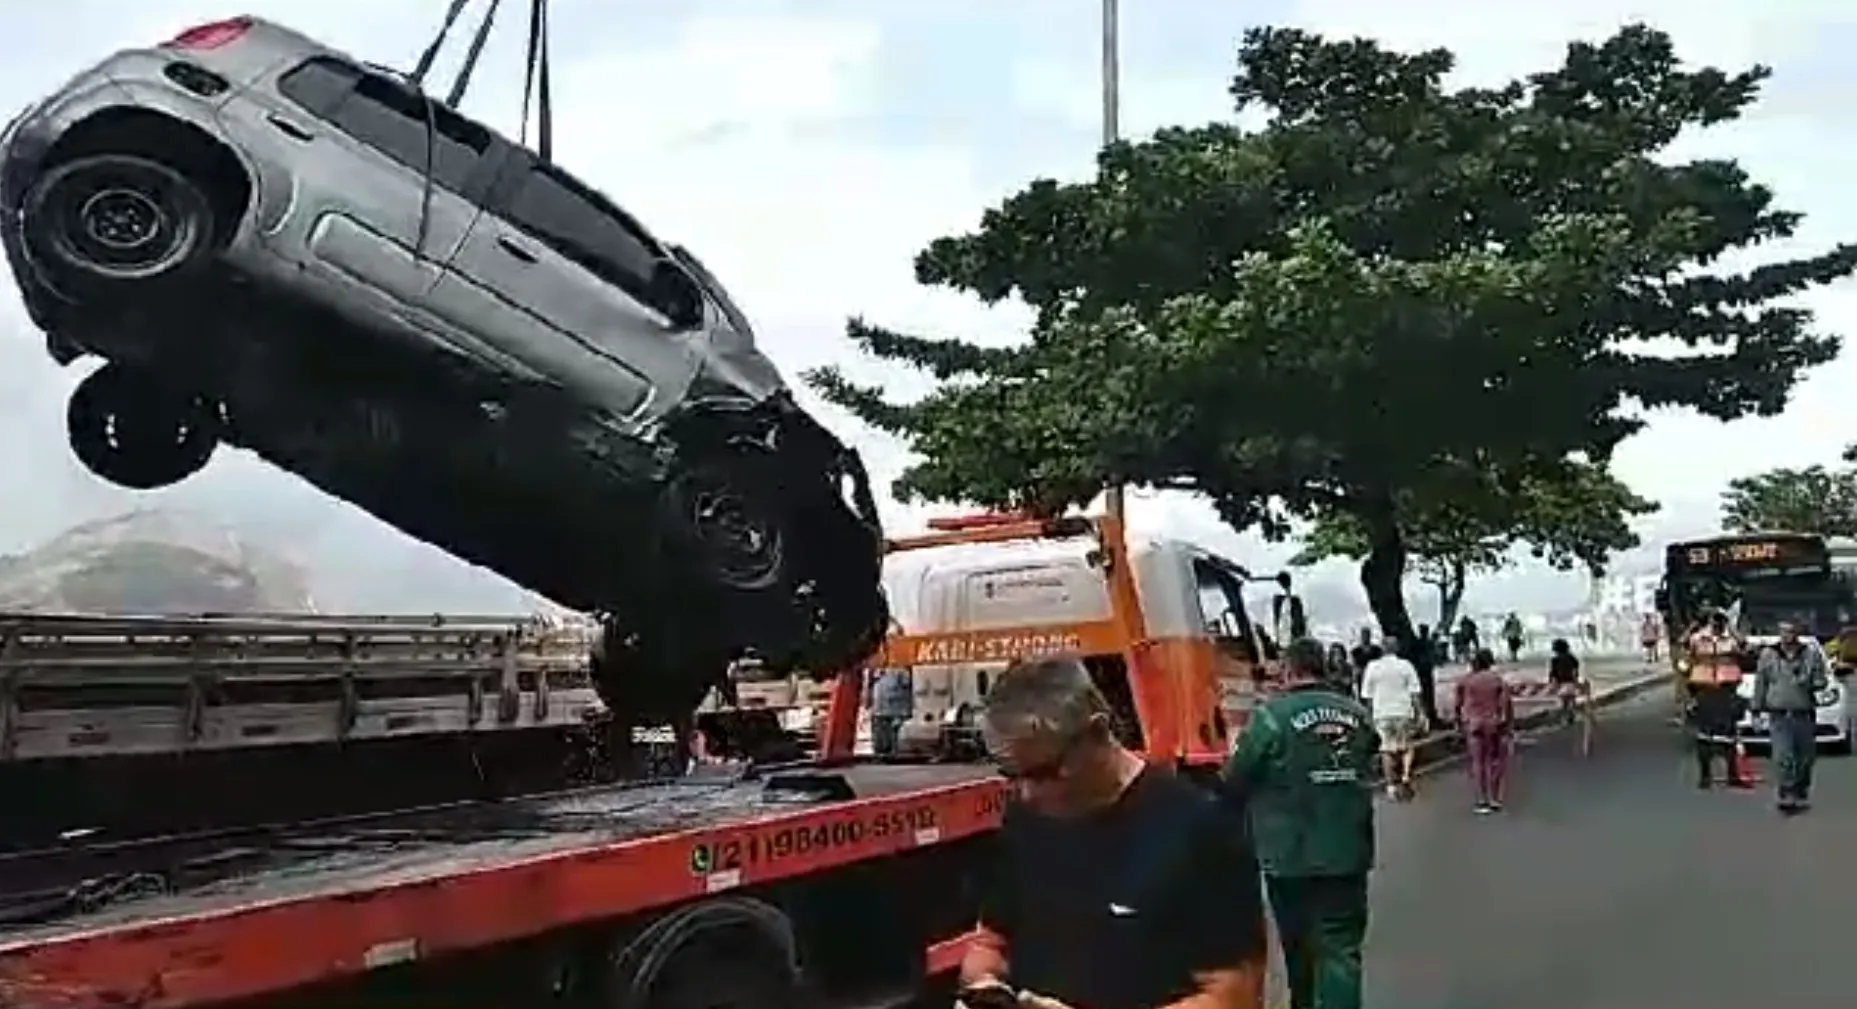 A Secretaria de Conservação e Serviços Públicos foi responsável por retirar o veículo da Baía de Guanabara